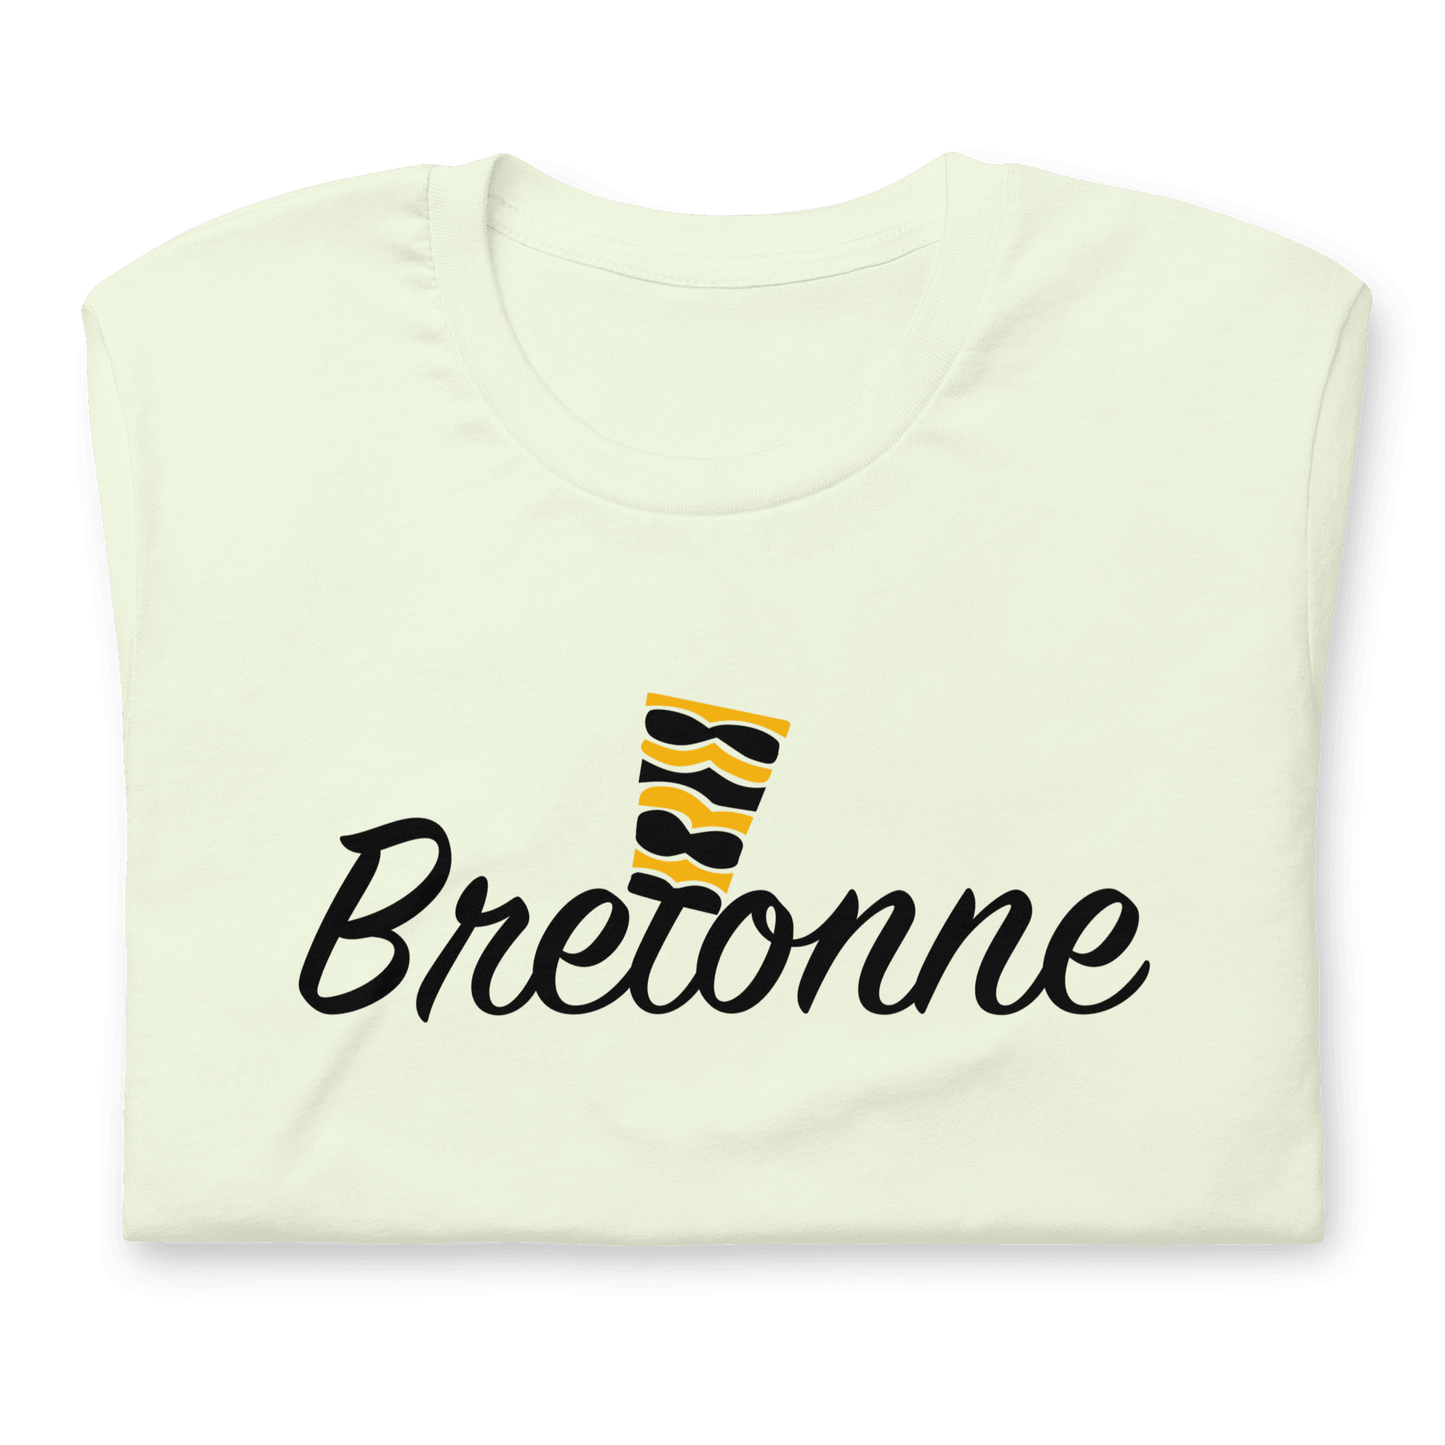 Breton T-shirt Bigoudène Headdress